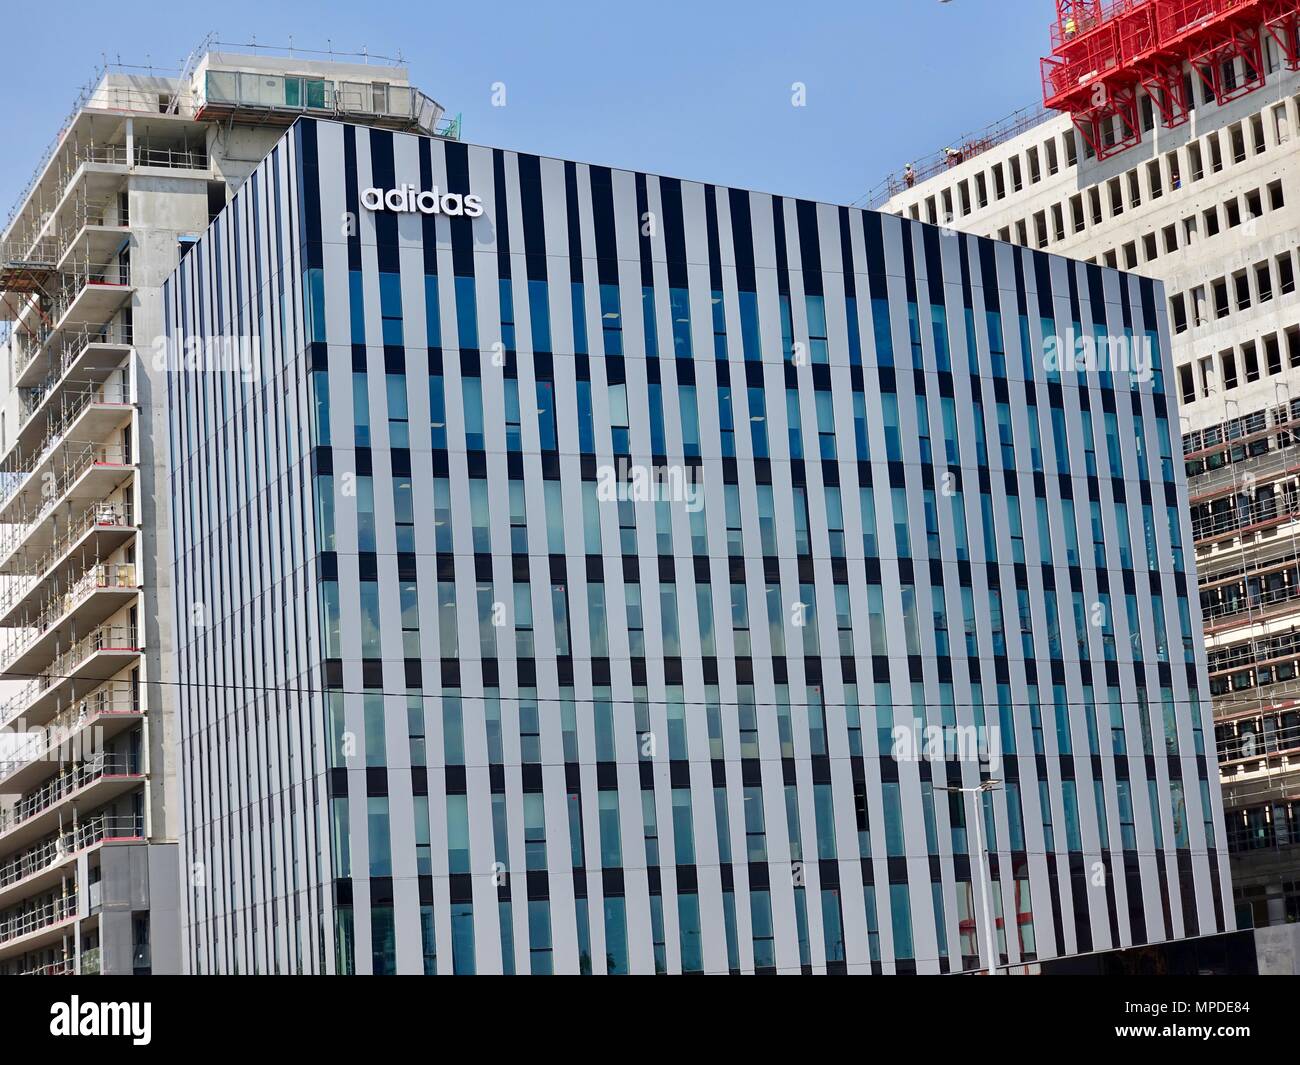 Die Fertigstellung des neuen Gebäudes für die Adidas Straßburg, Frankreich,  Sitz, und der Bau von anderen modernen Bürogebäuden Stockfotografie - Alamy